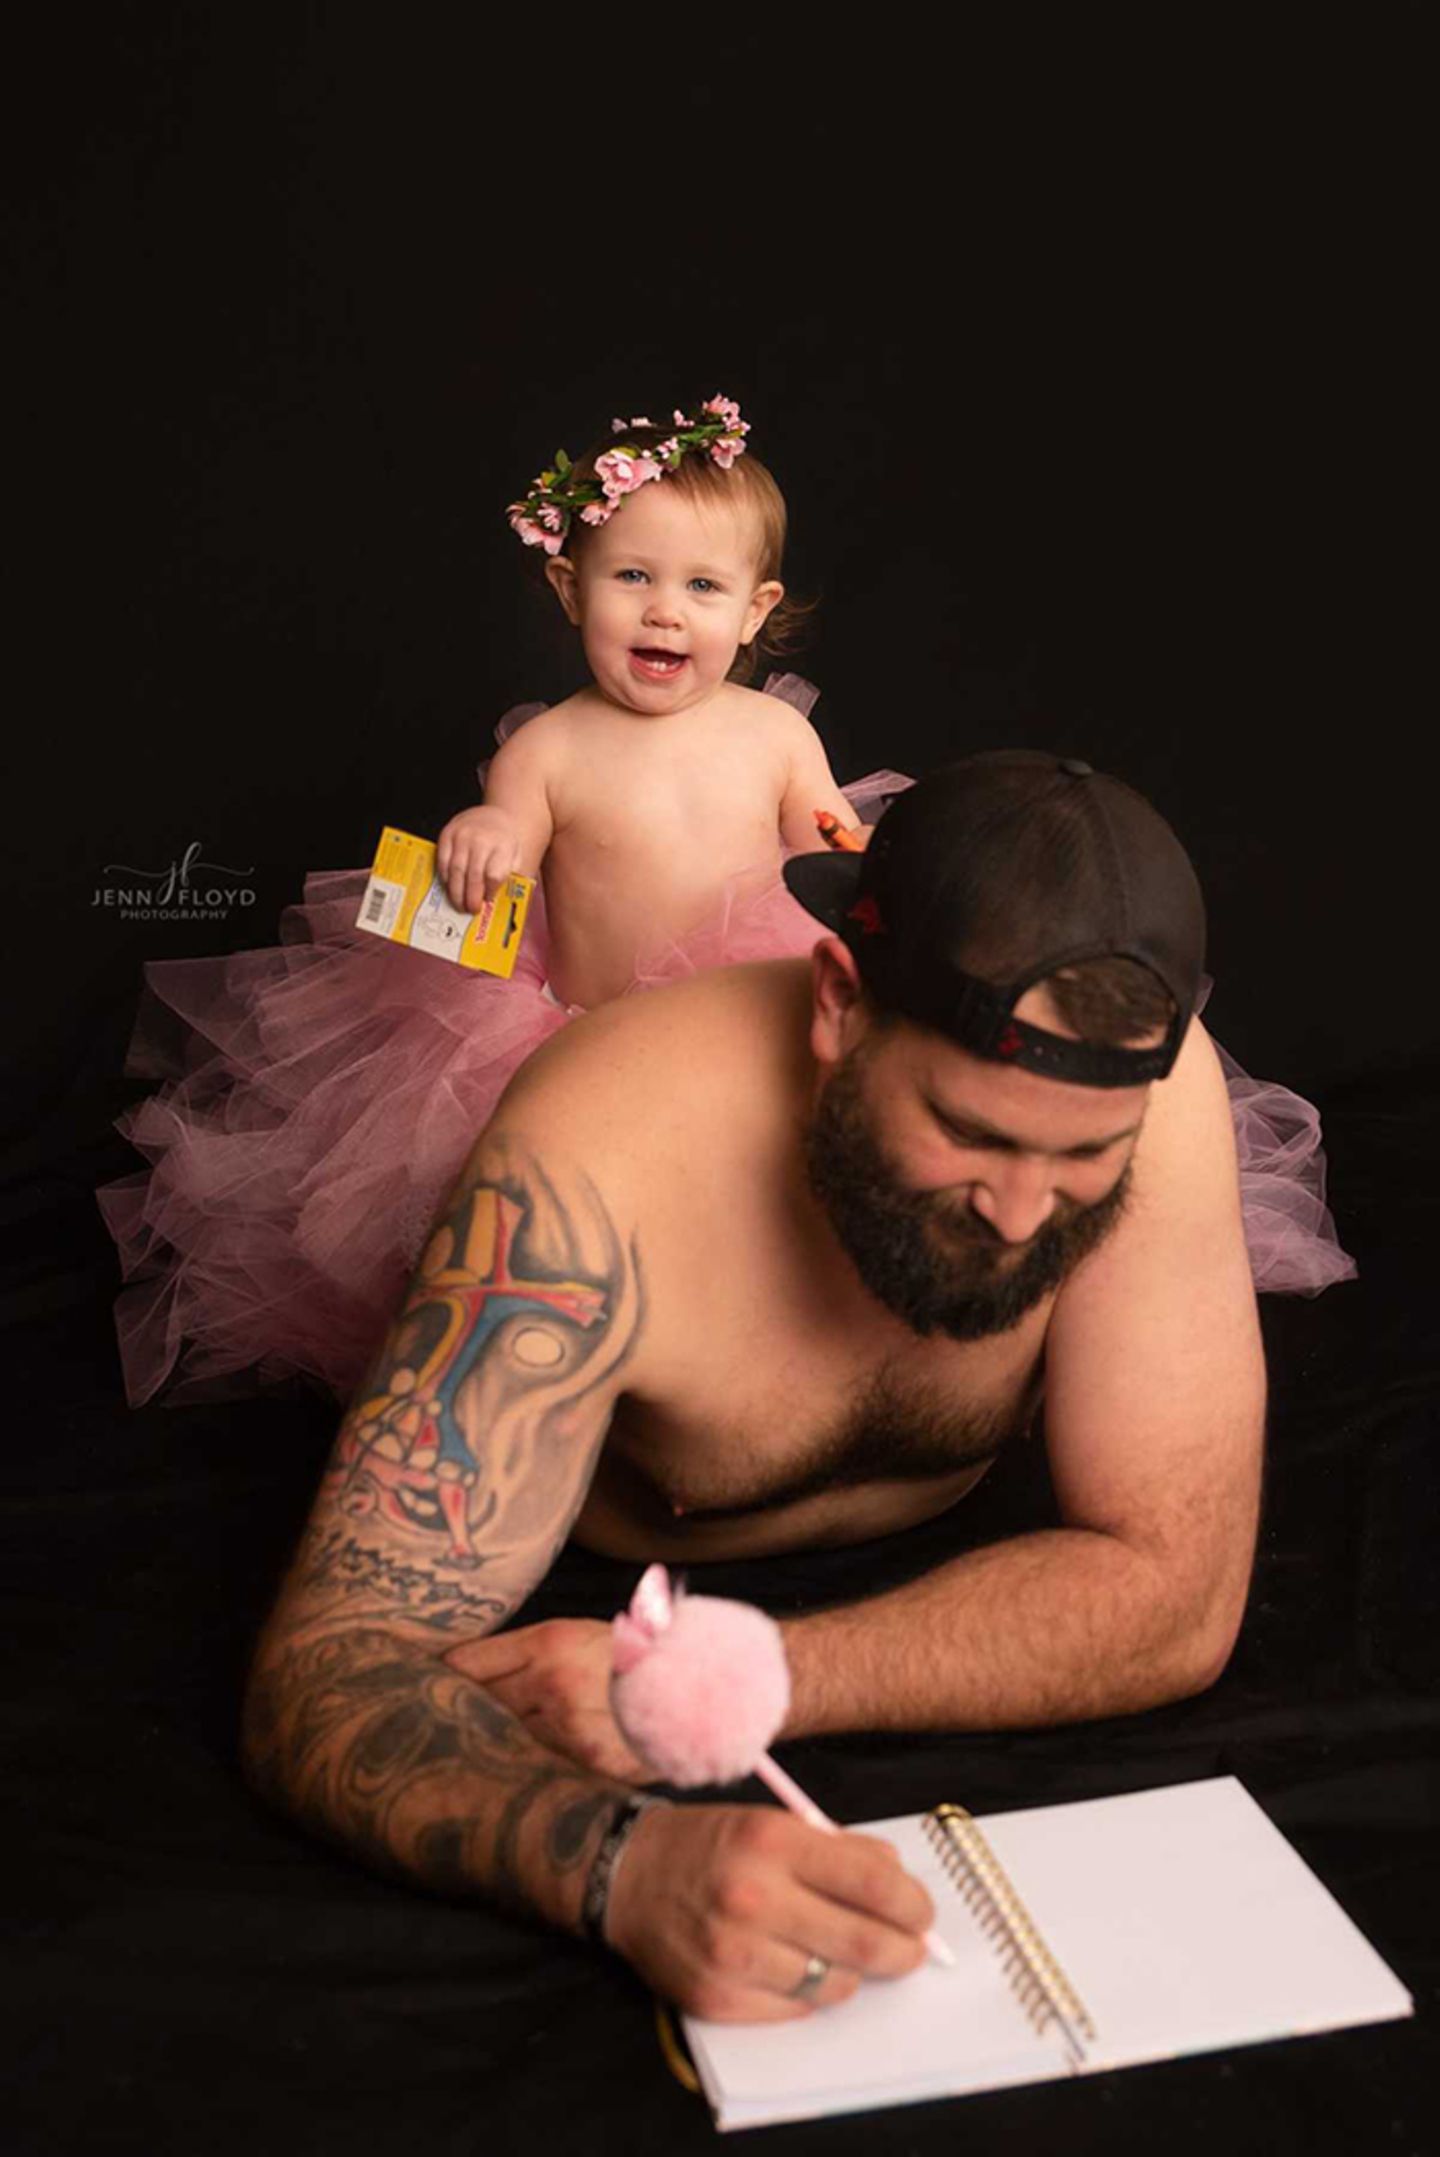 Papa-Tochter Bilder: Tochter sitzt auf dem Rücken vom Vater